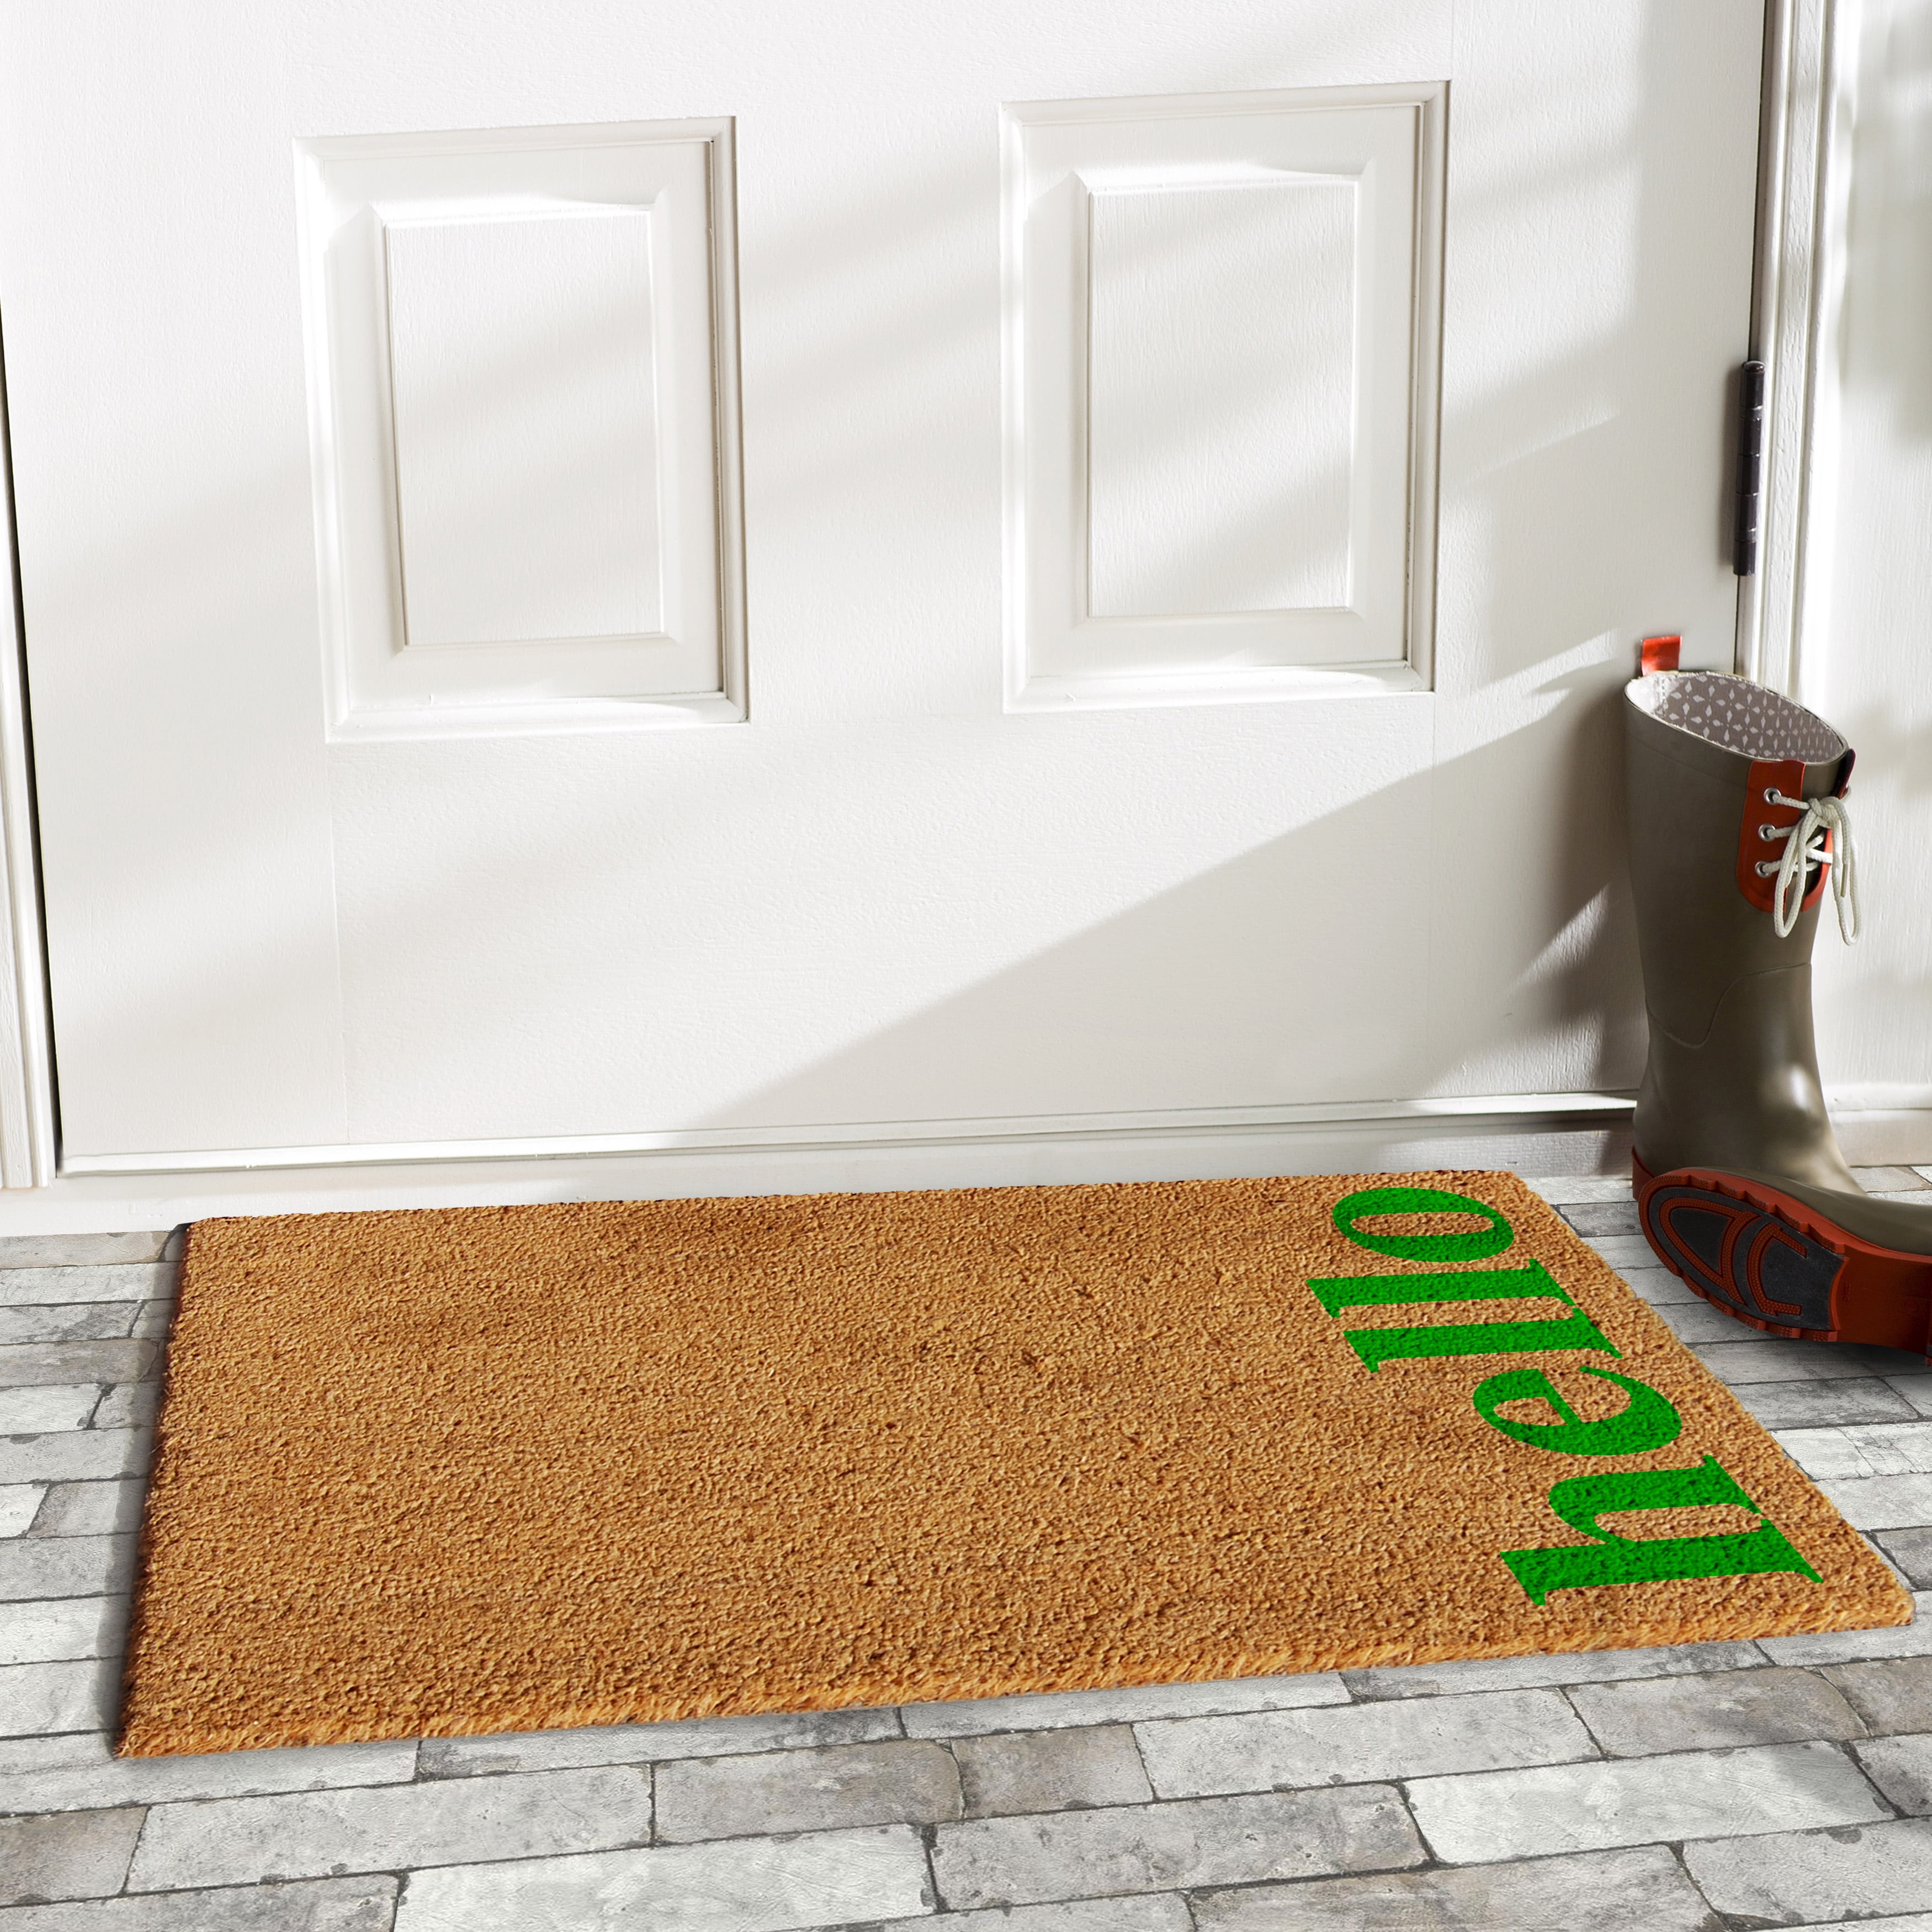  Sunlit Mandala Welcome Mats, 33.5 x 15.8, Indoor Outdoor  Non-Slip Front Door Mat, Front Door Decor, Low Profile Entryway Rug, Easy  to Clean Door Mat for Back Door Waterproof, Green 